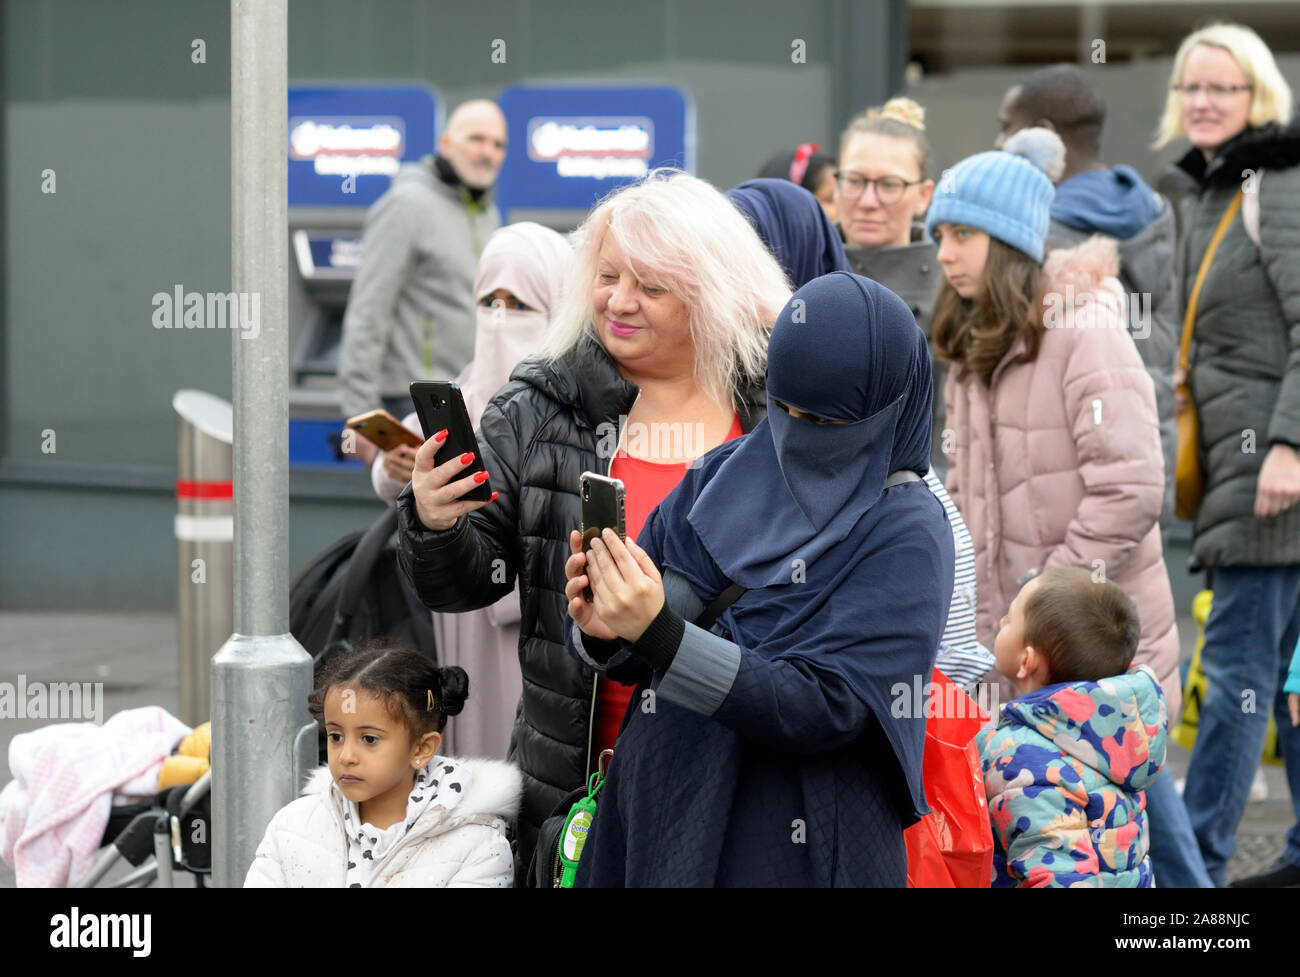 Verschiedene Leute beobachten ein puppenspieler. Ein Muslim in Niqab. Stockfoto